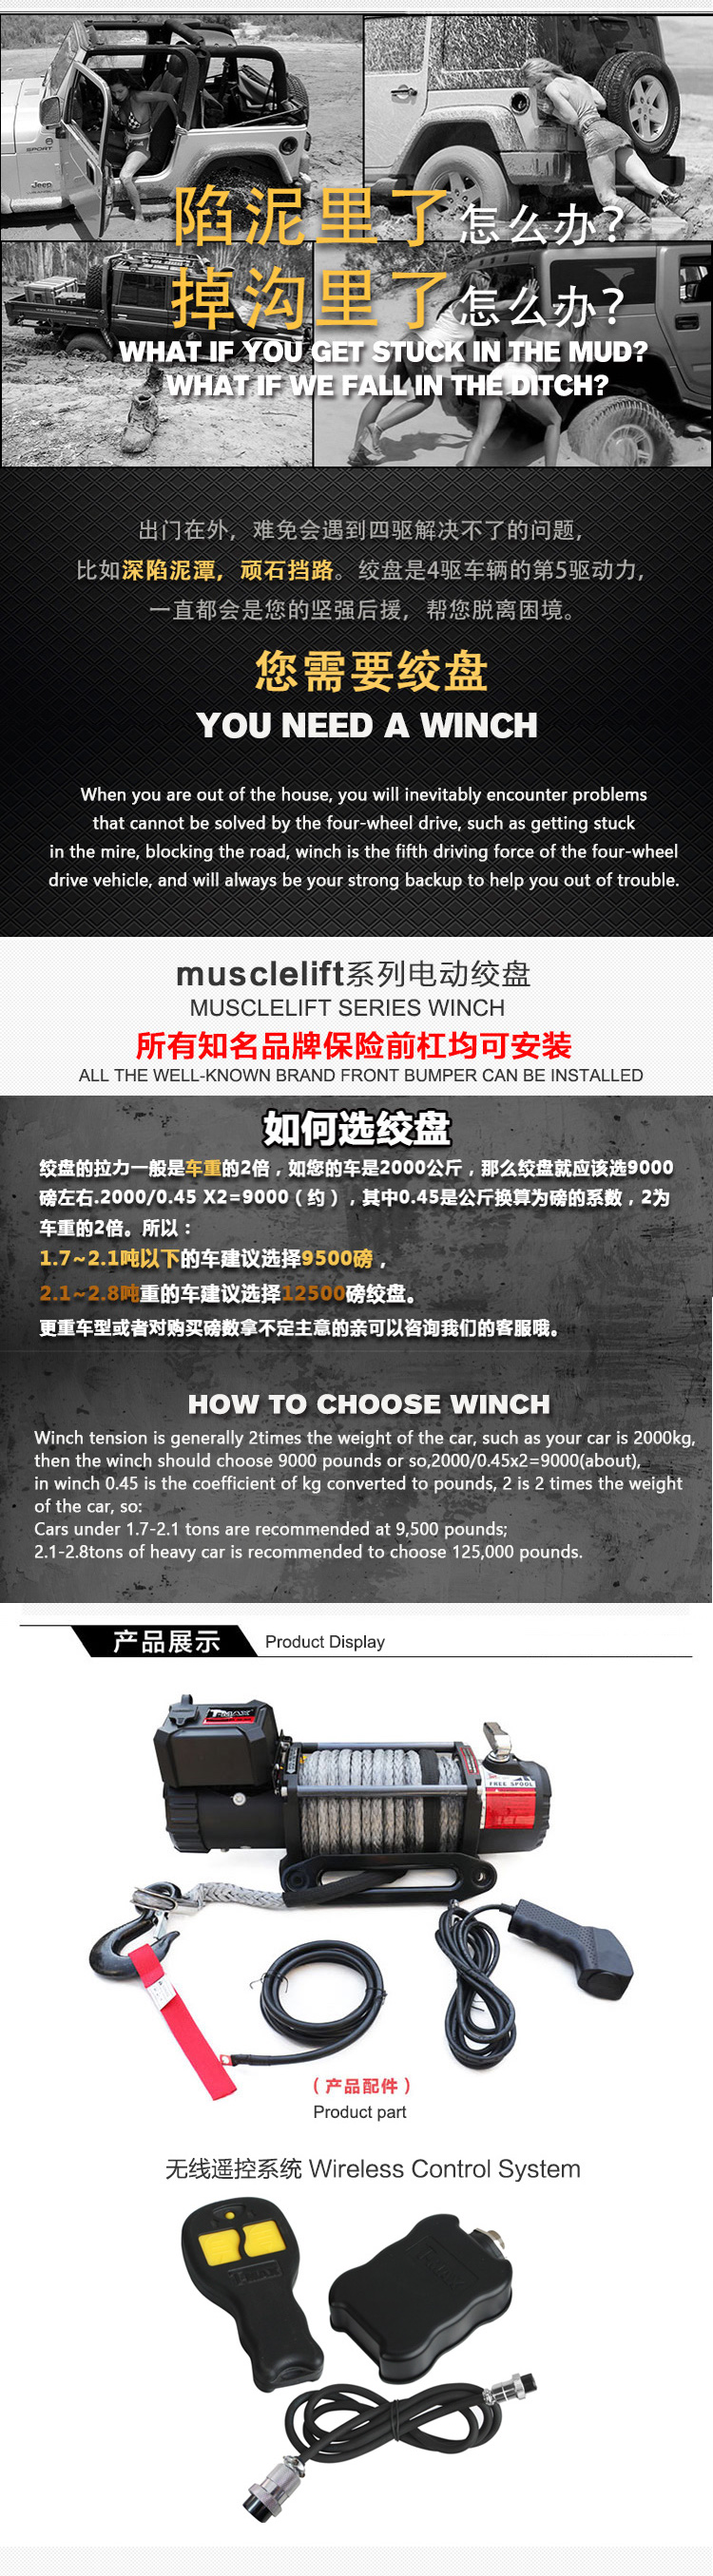 Musclelift 2.jpg